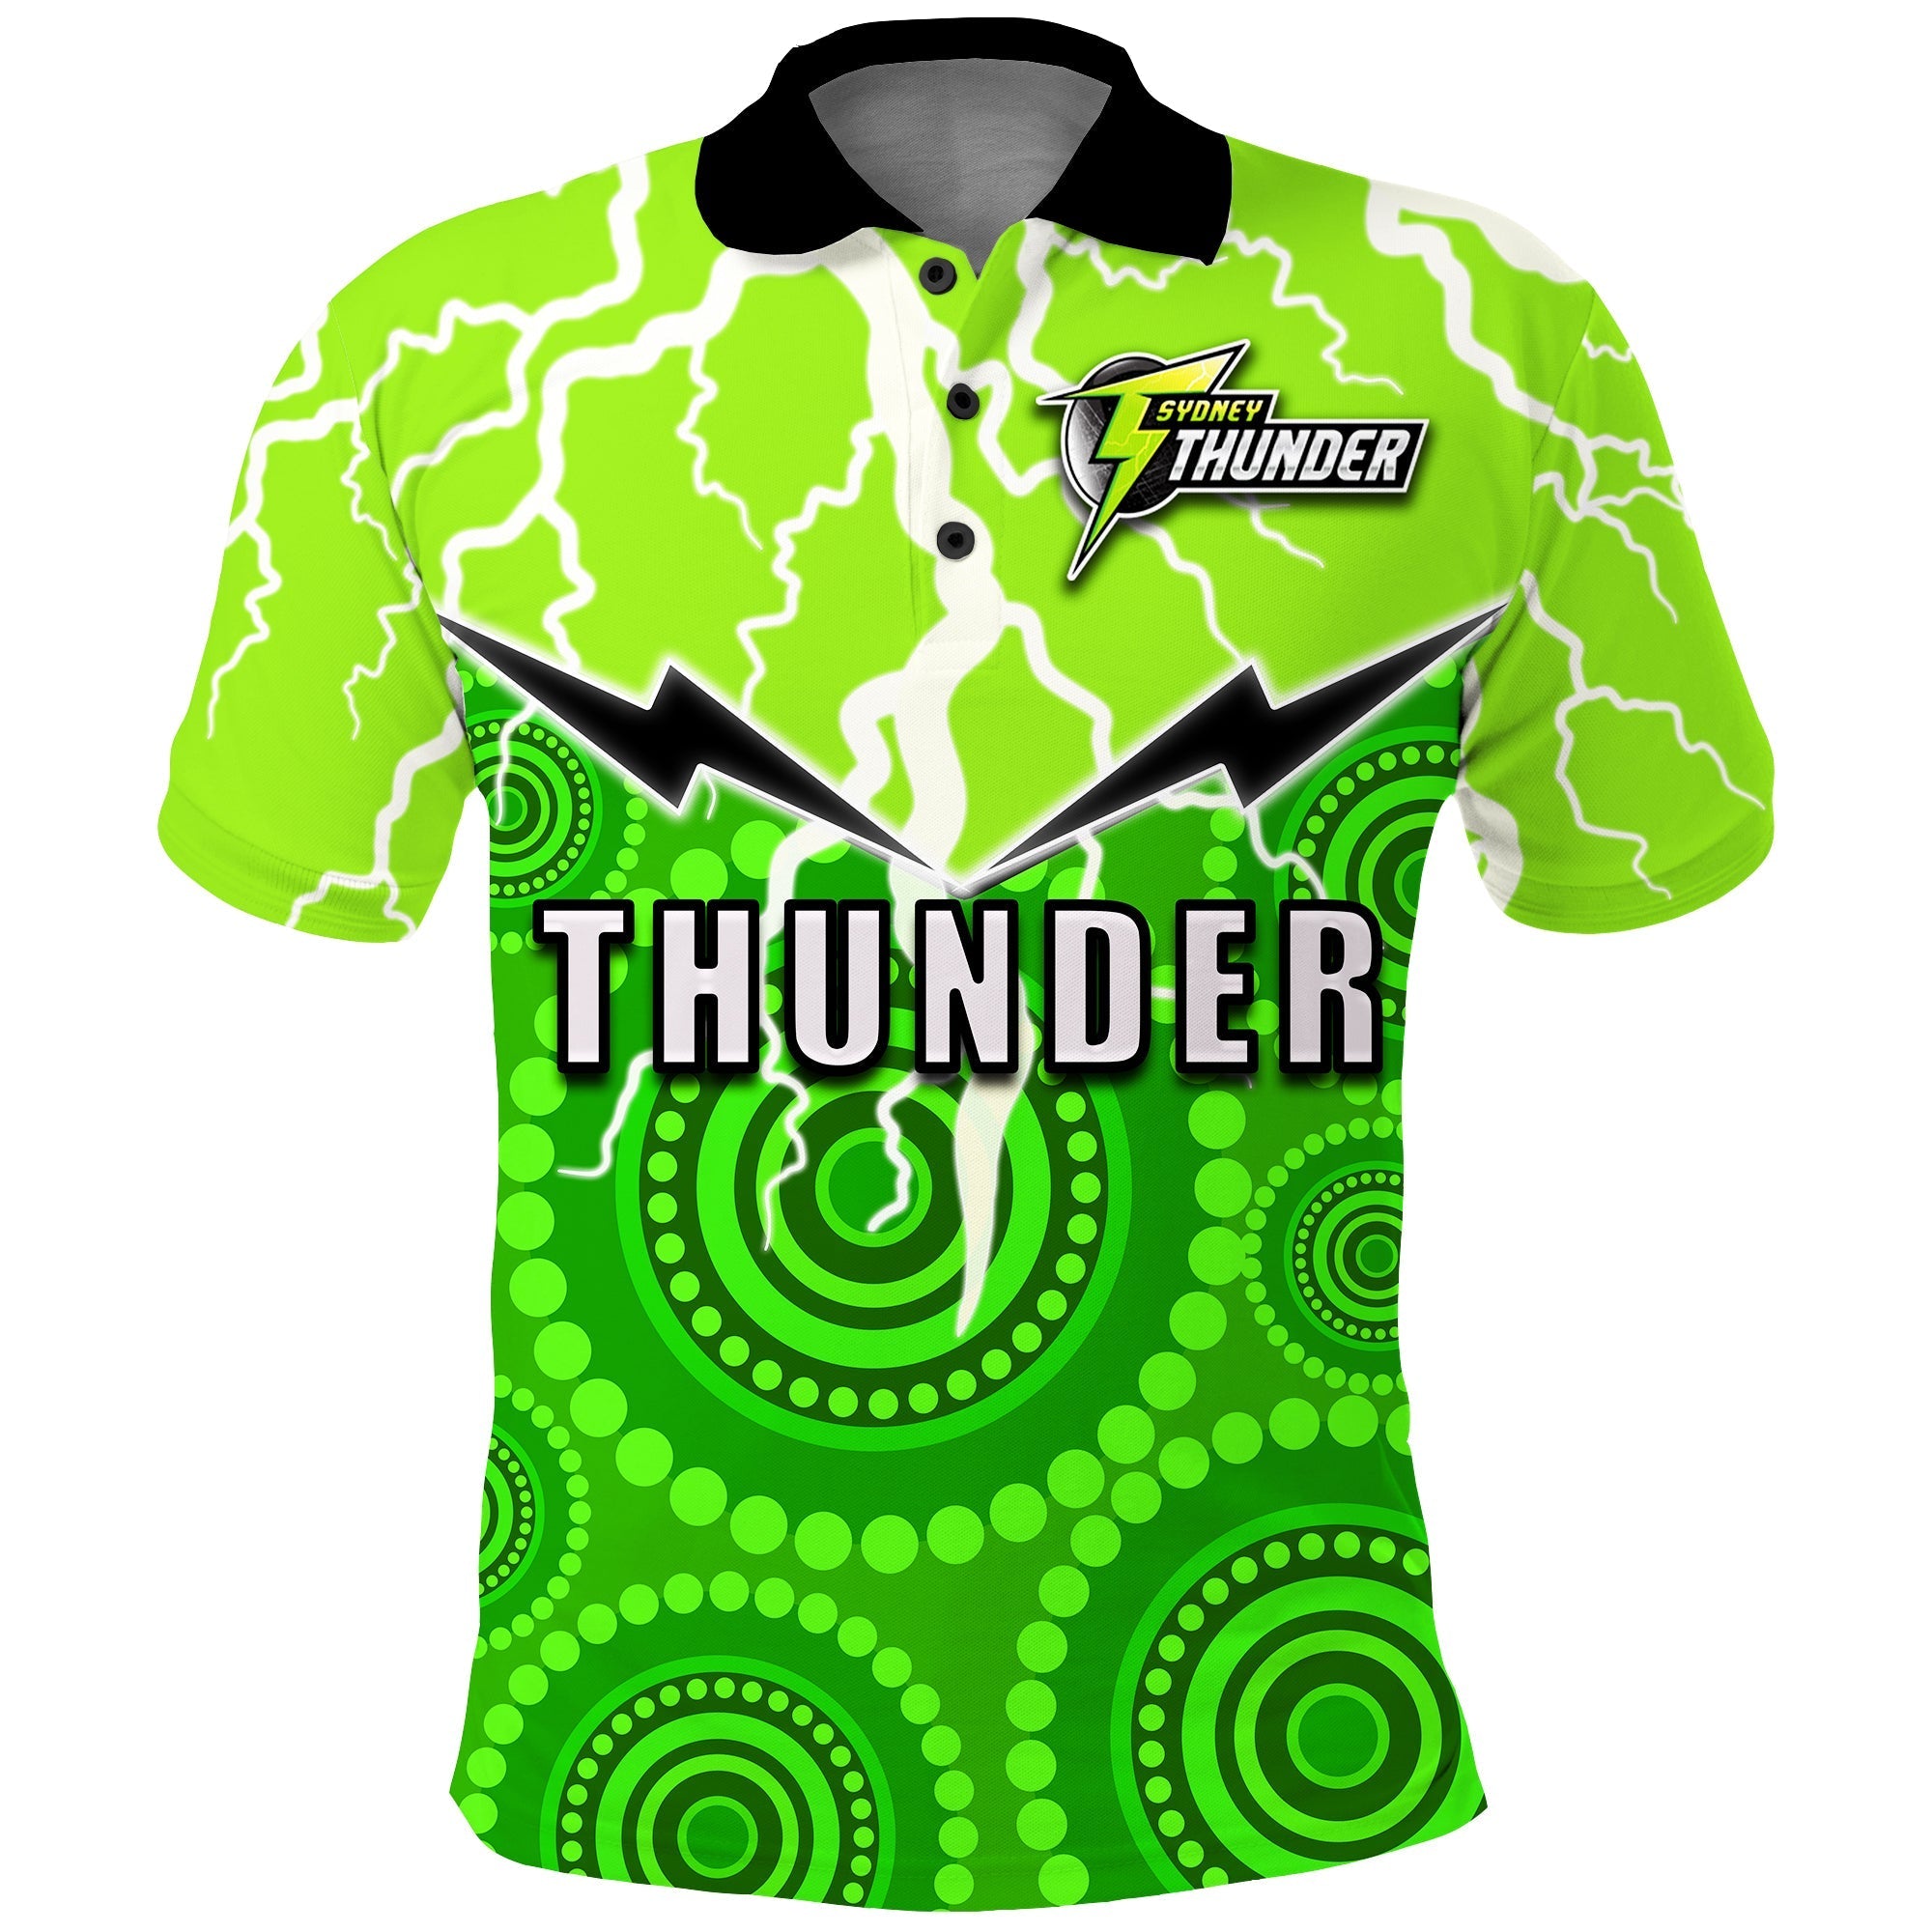 sydney-thunder-cricket-aboriginal-thunder-lt20